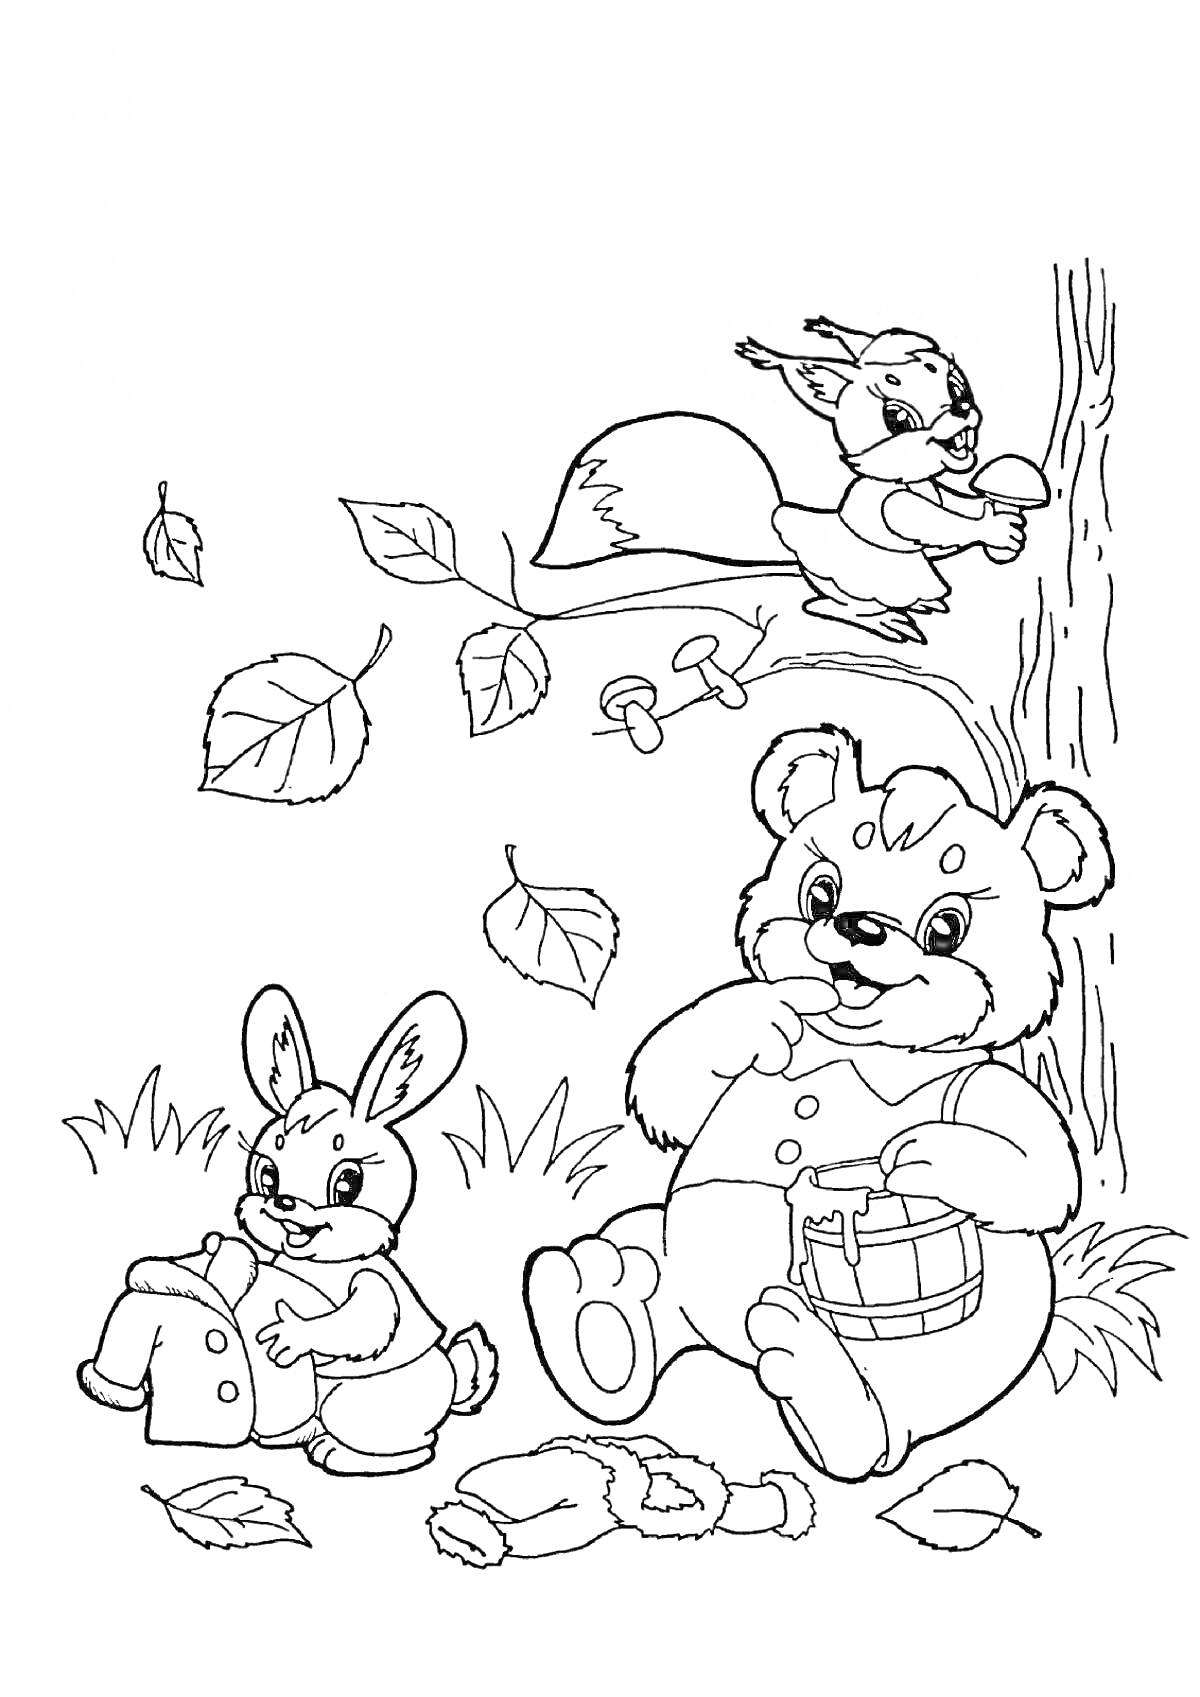 Медведь с бочкой меда, заяц с корзиной, белка на дереве с грибом, падающие листья, грибы на земле